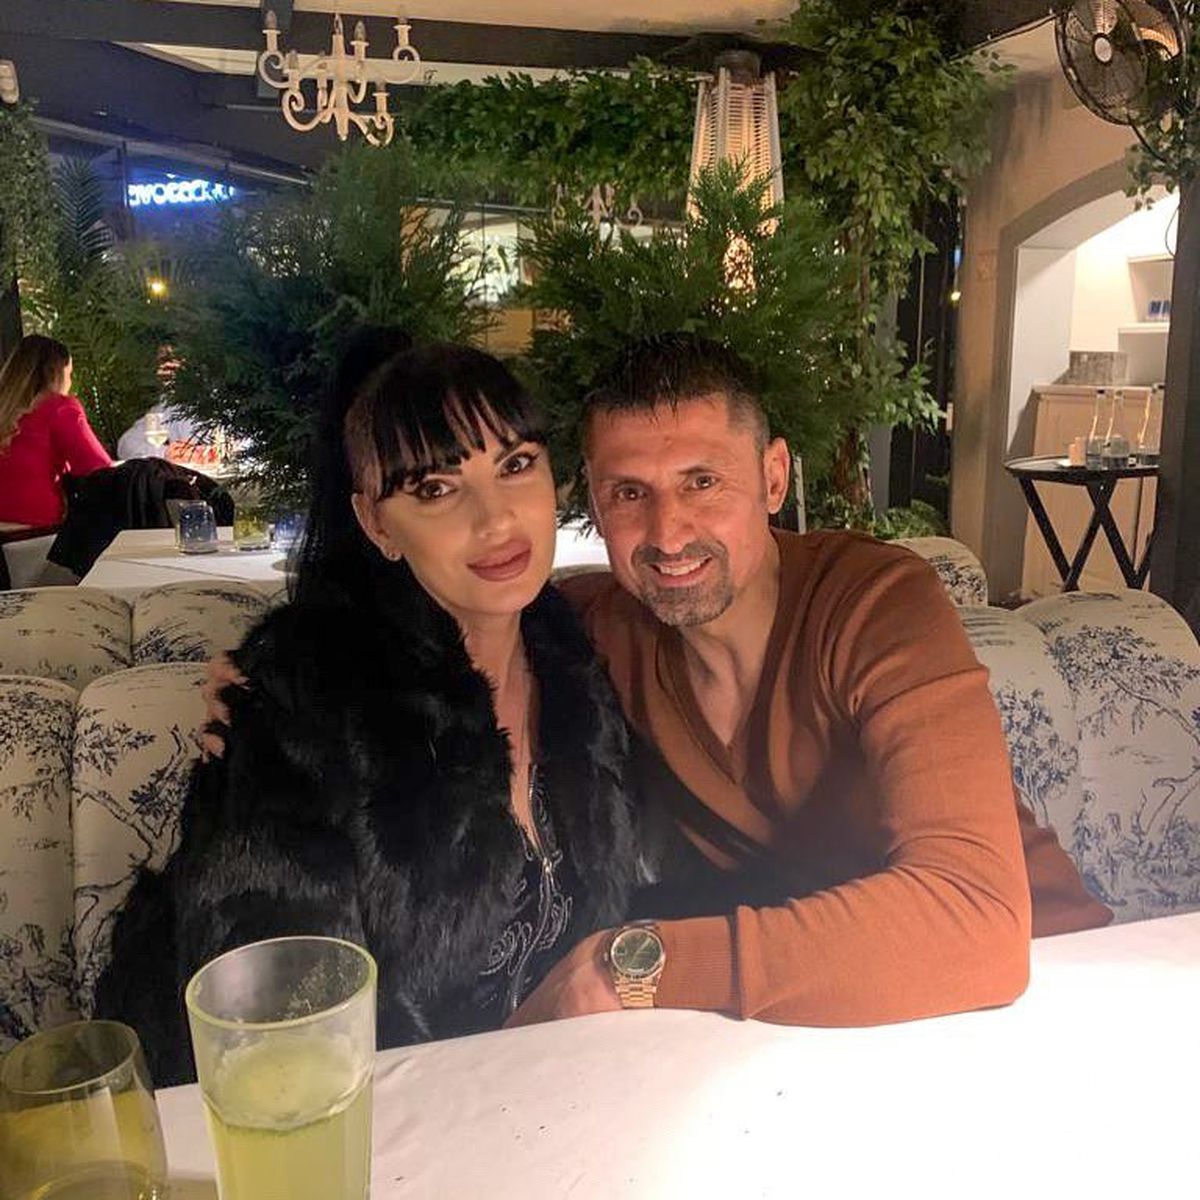 Mihaela Dănciulescu face senzație la piscină: imaginea postată de Danciu cu soția